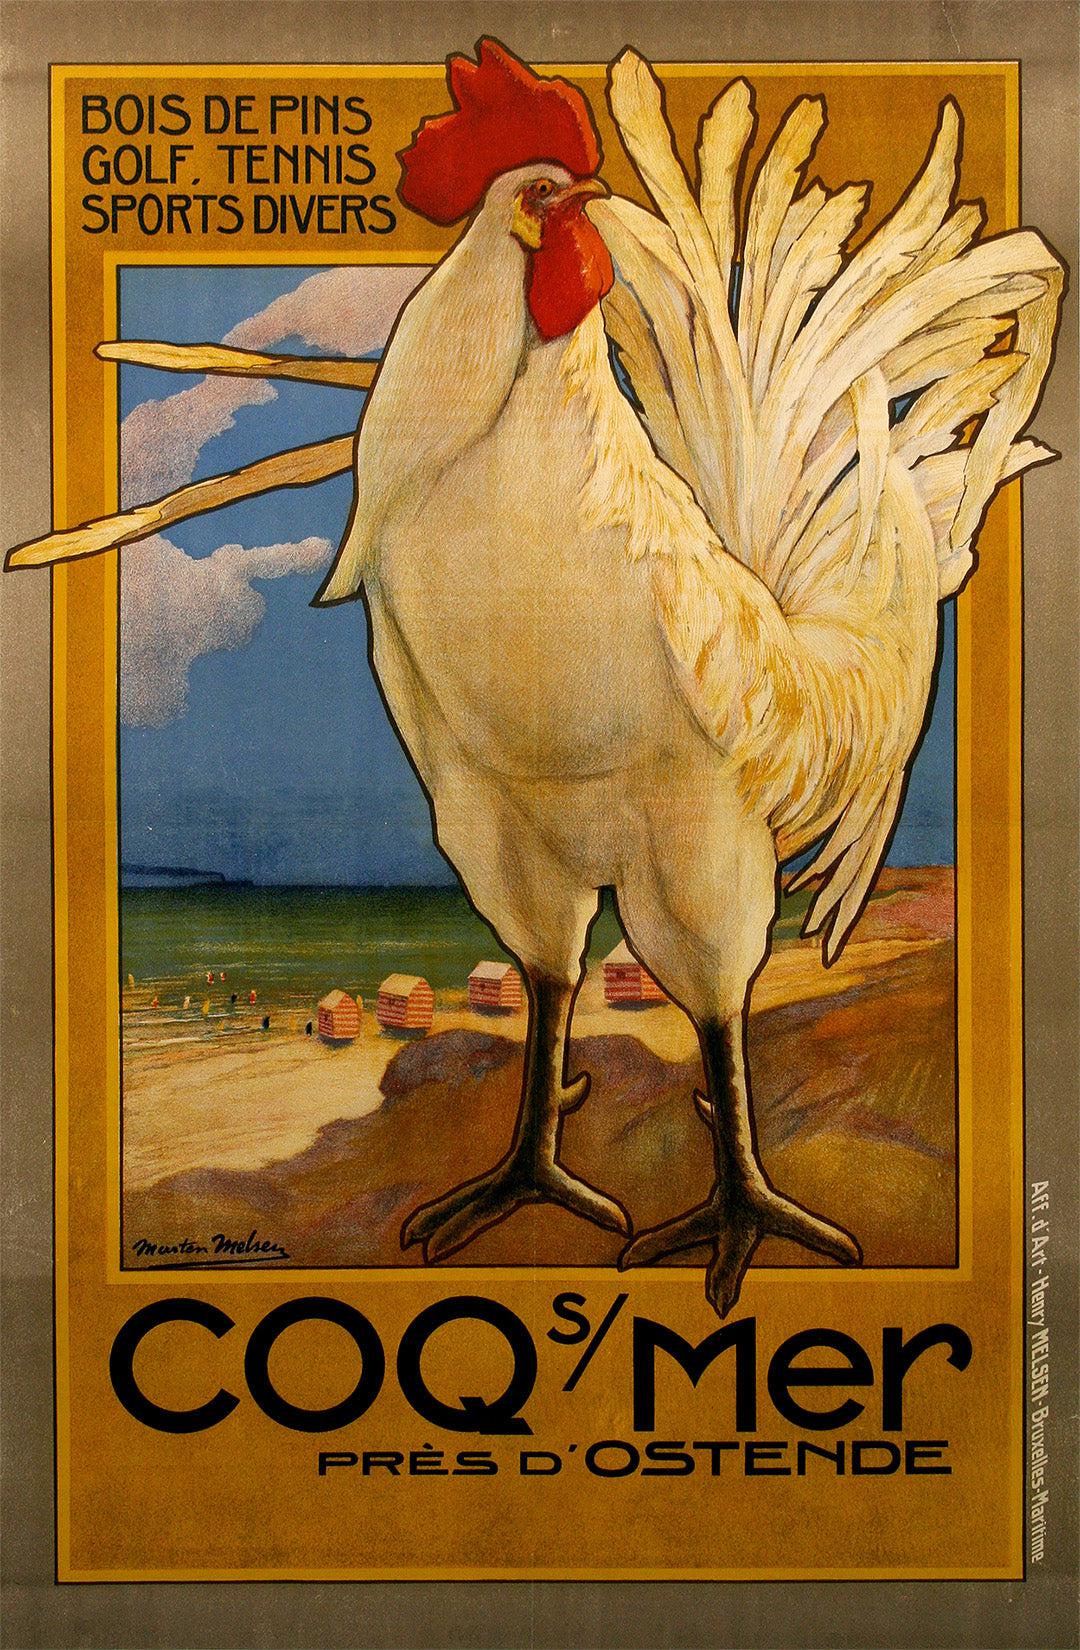 Original Vintage Belgian Travel Poster Coq Sur Mer by Marten Melsen 1923 - Rooster